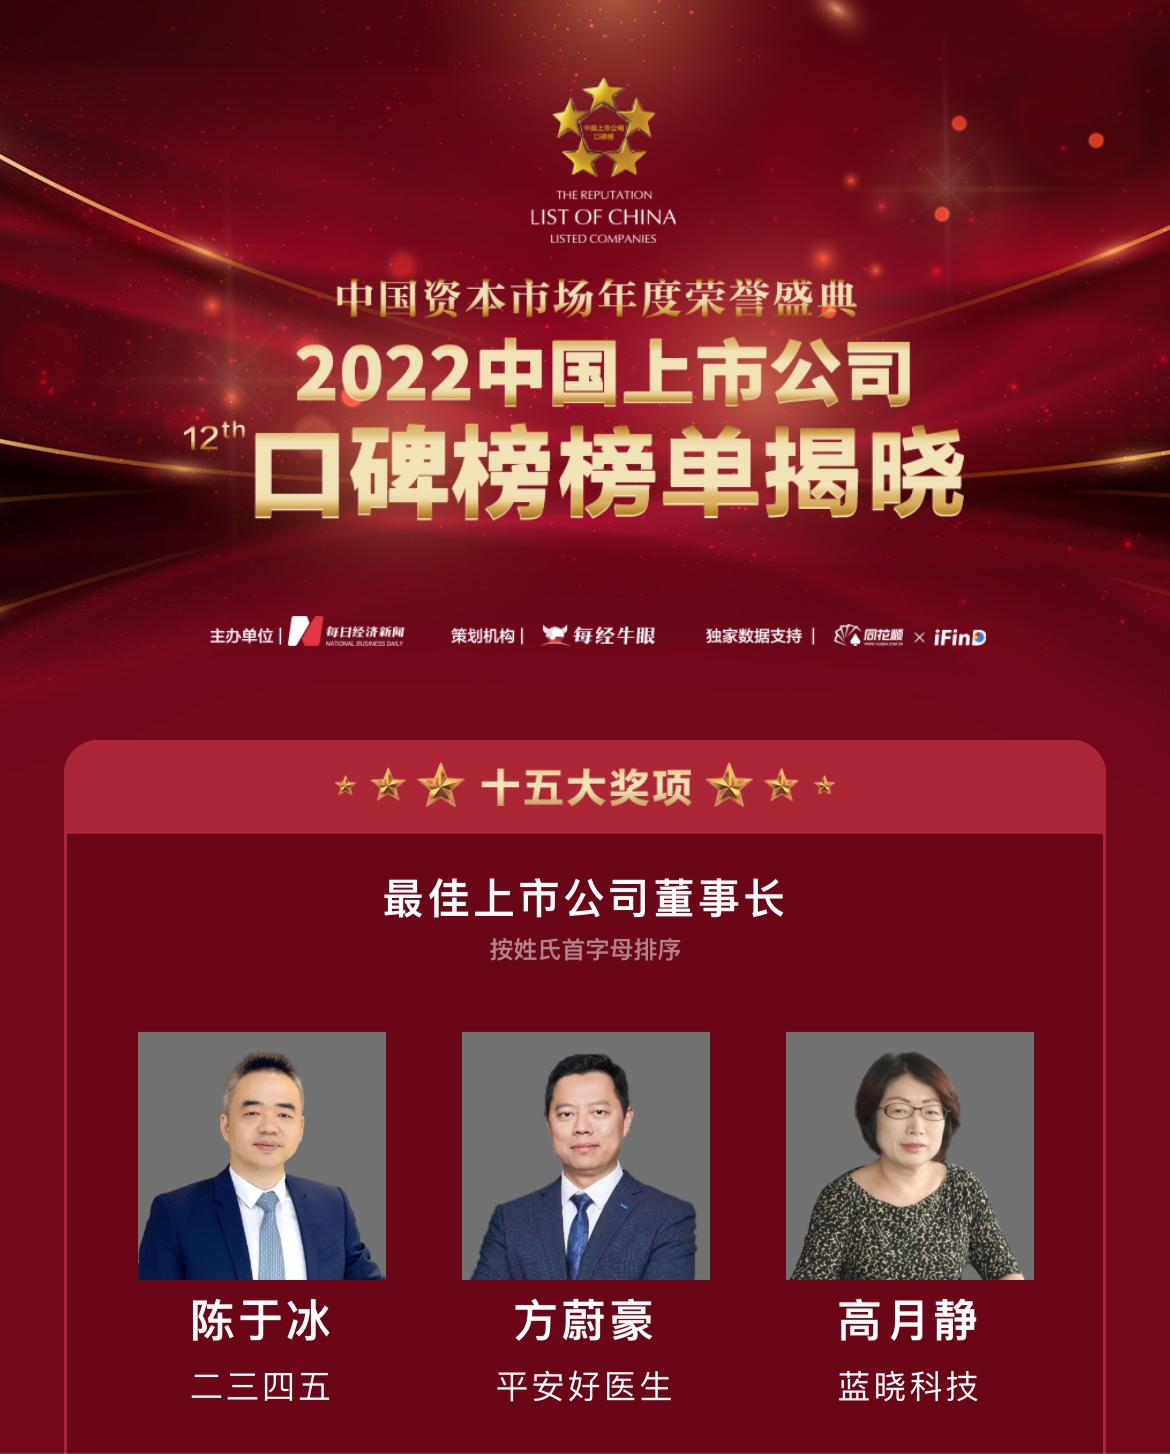 蓝晓科技荣膺“第十二届中国上市公司口碑榜”两项大奖